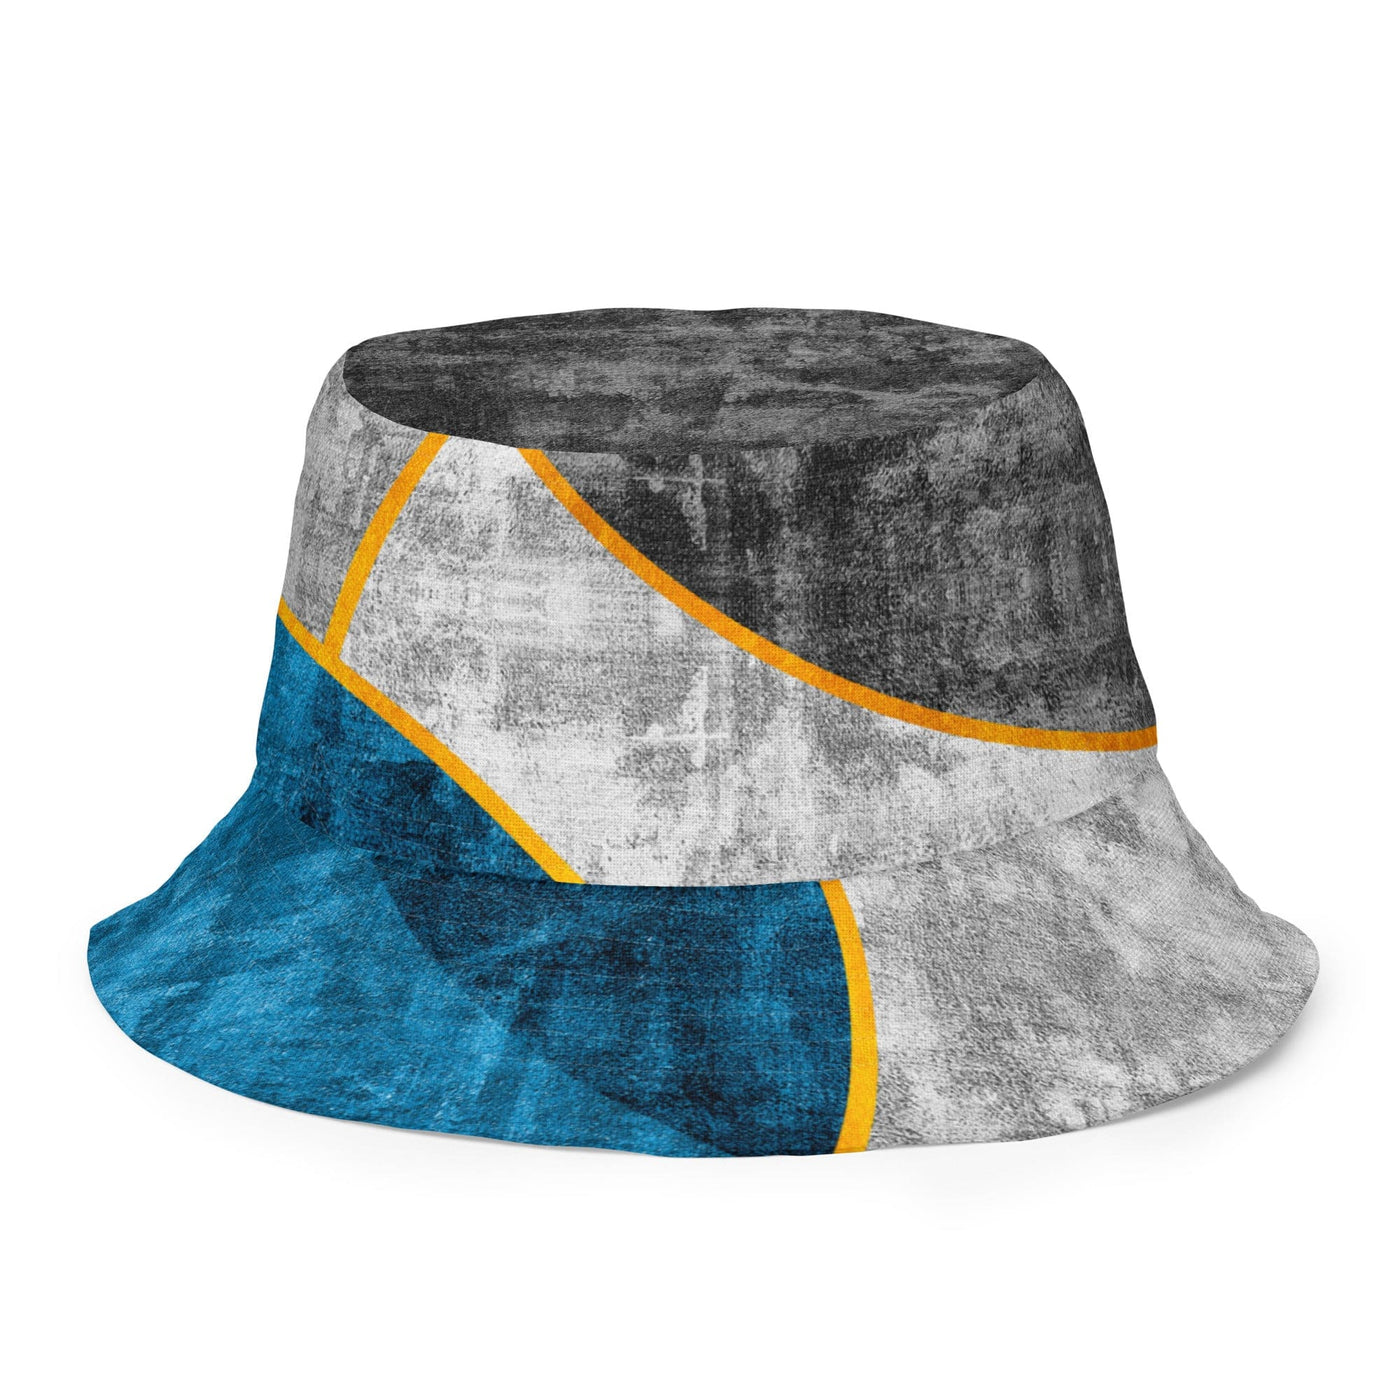 Reversible Bucket Hat Blue Grey Design - Unisex / Bucket Hats